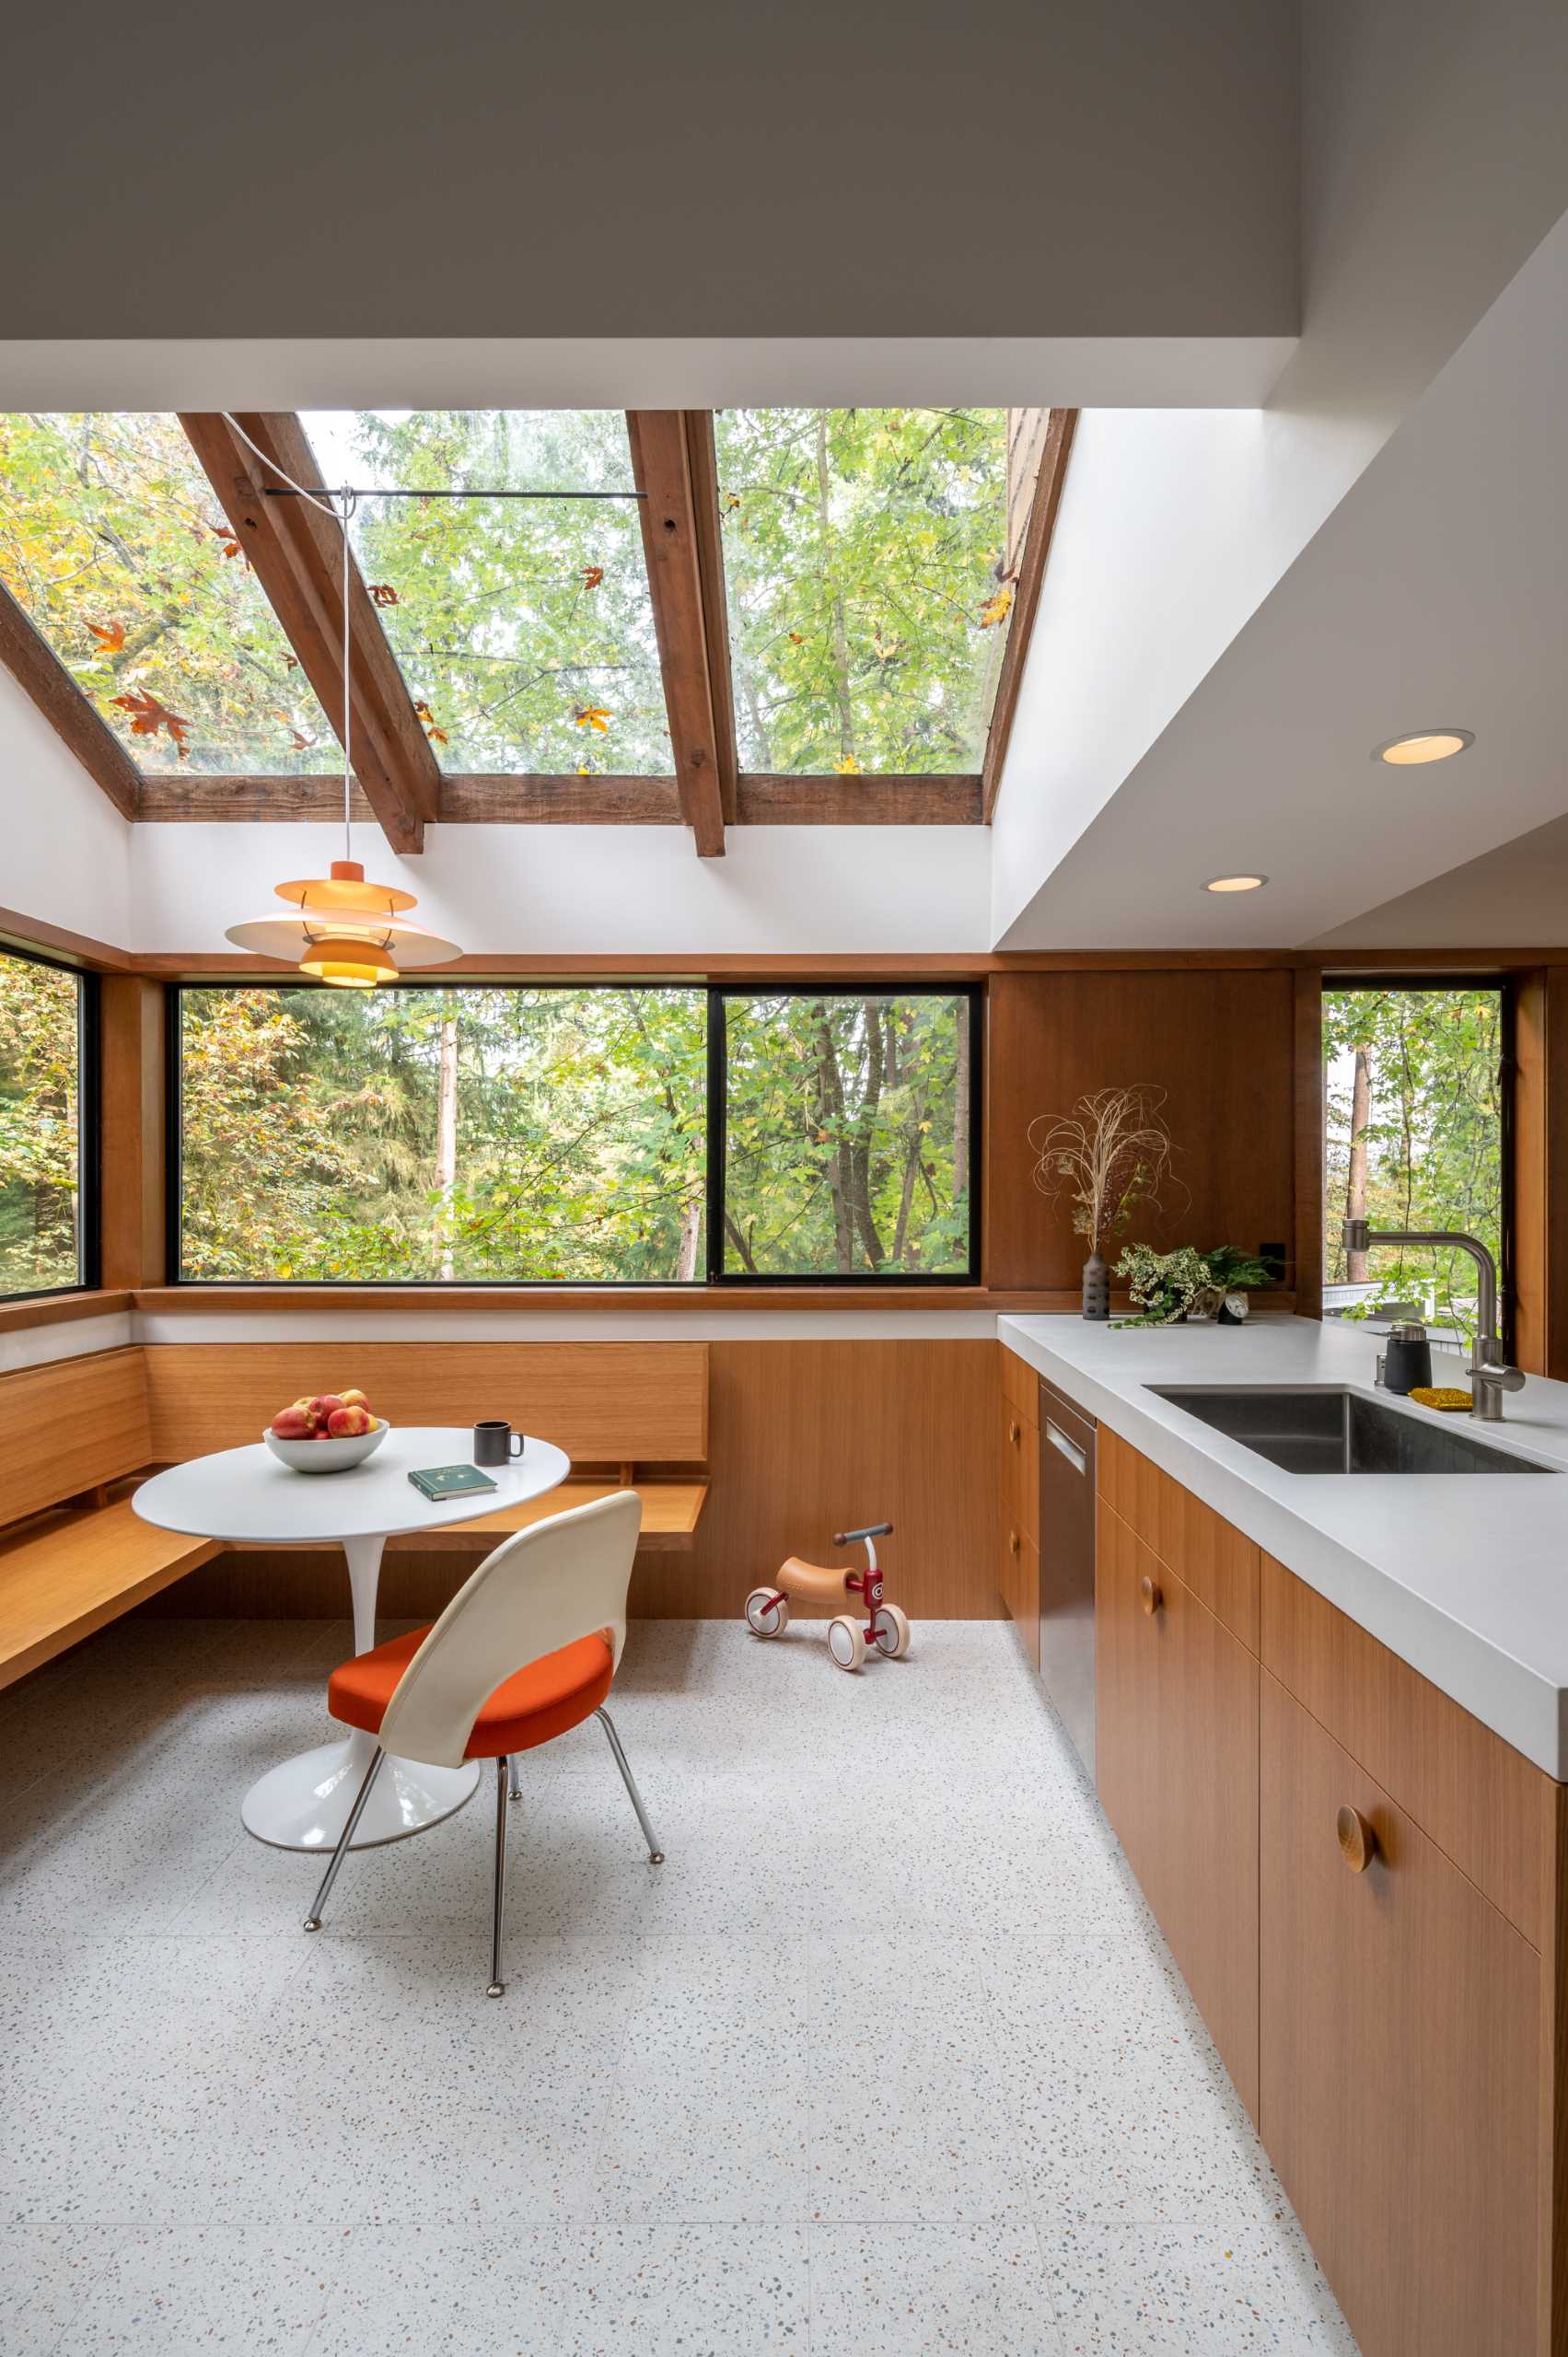 آشپزخانه‌ای بازسازی‌شده با گوشه‌ای توکار برای صبحانه در زیر نورگیرها و در کنار پنجره‌هایی با چشم‌انداز جنگل.